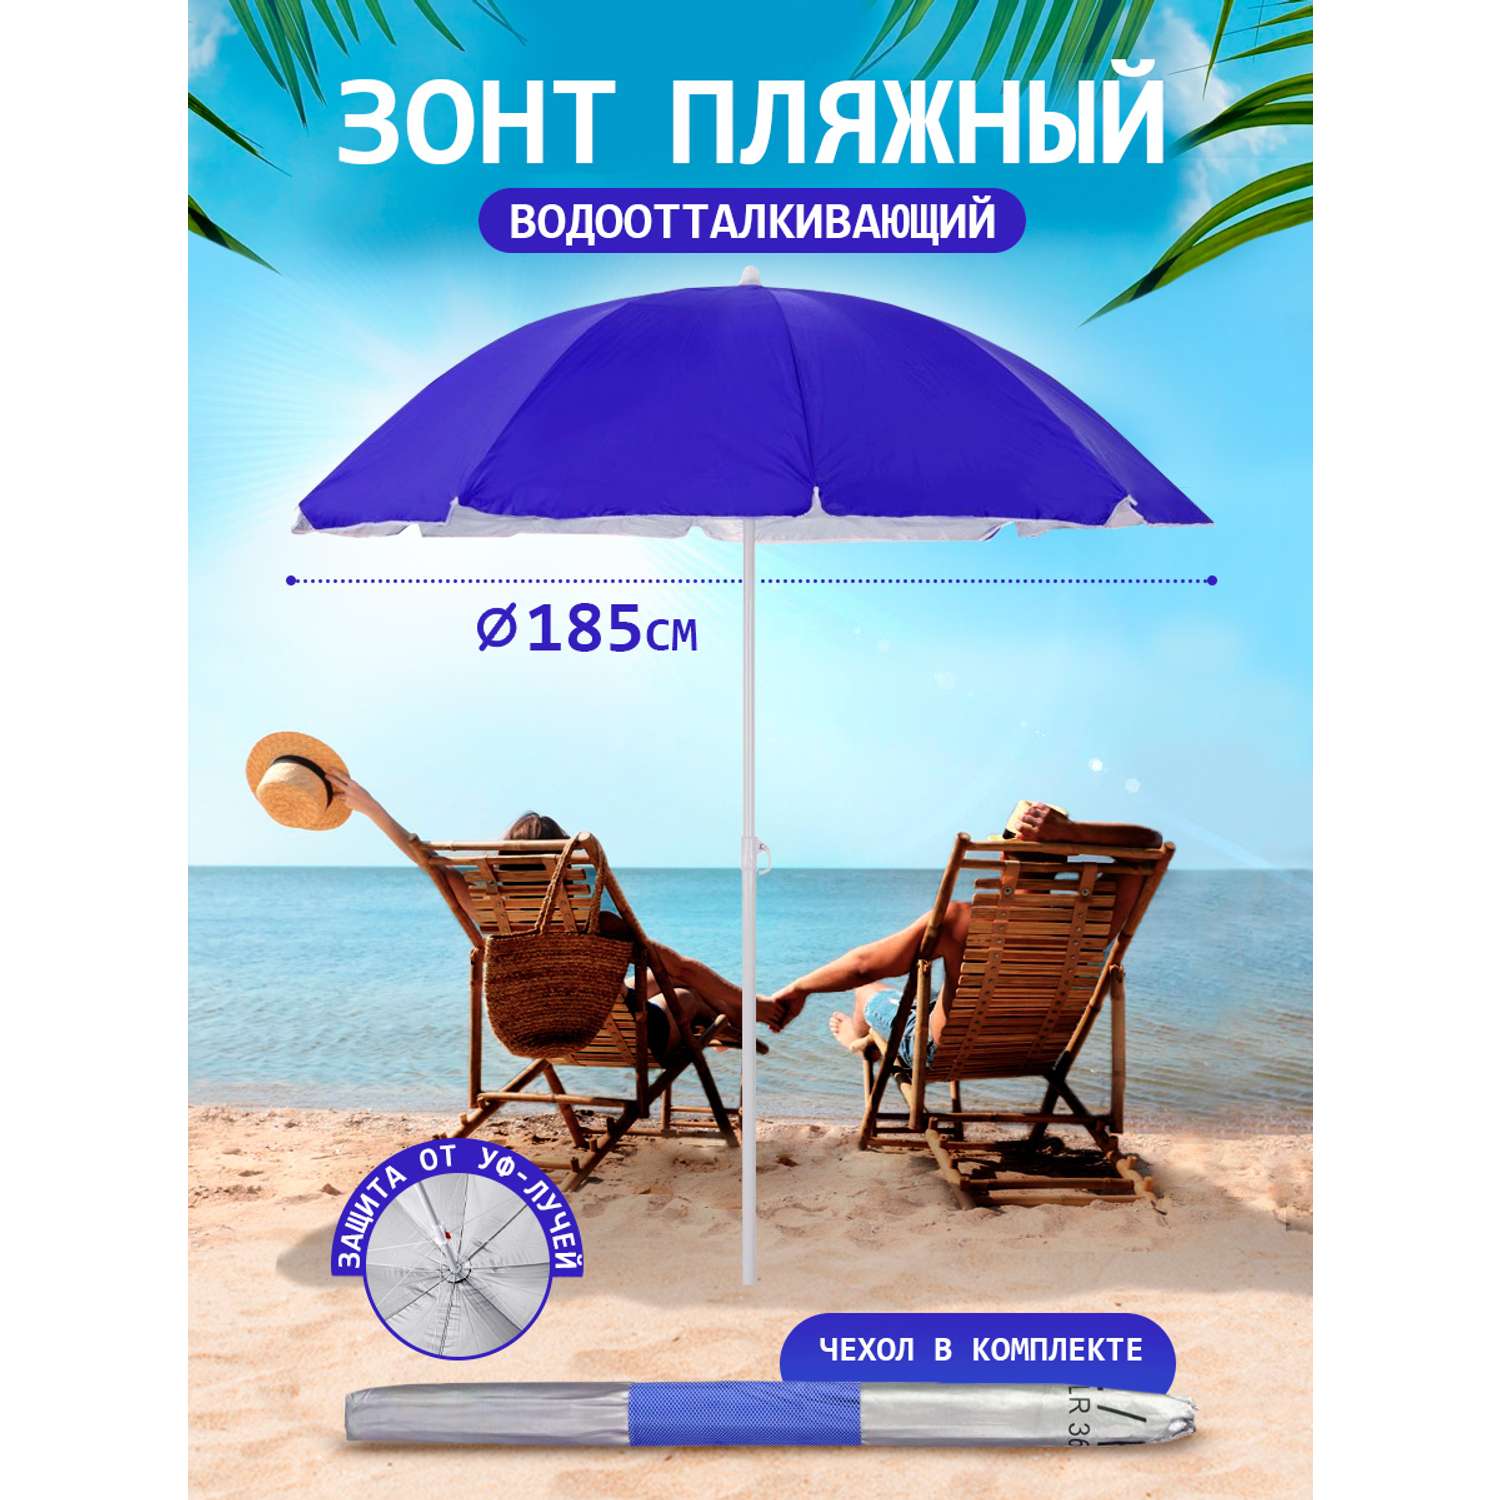 Зонт пляжный BABY STYLE большой от солнца садовый дачный 1.85 м синий - фото 1